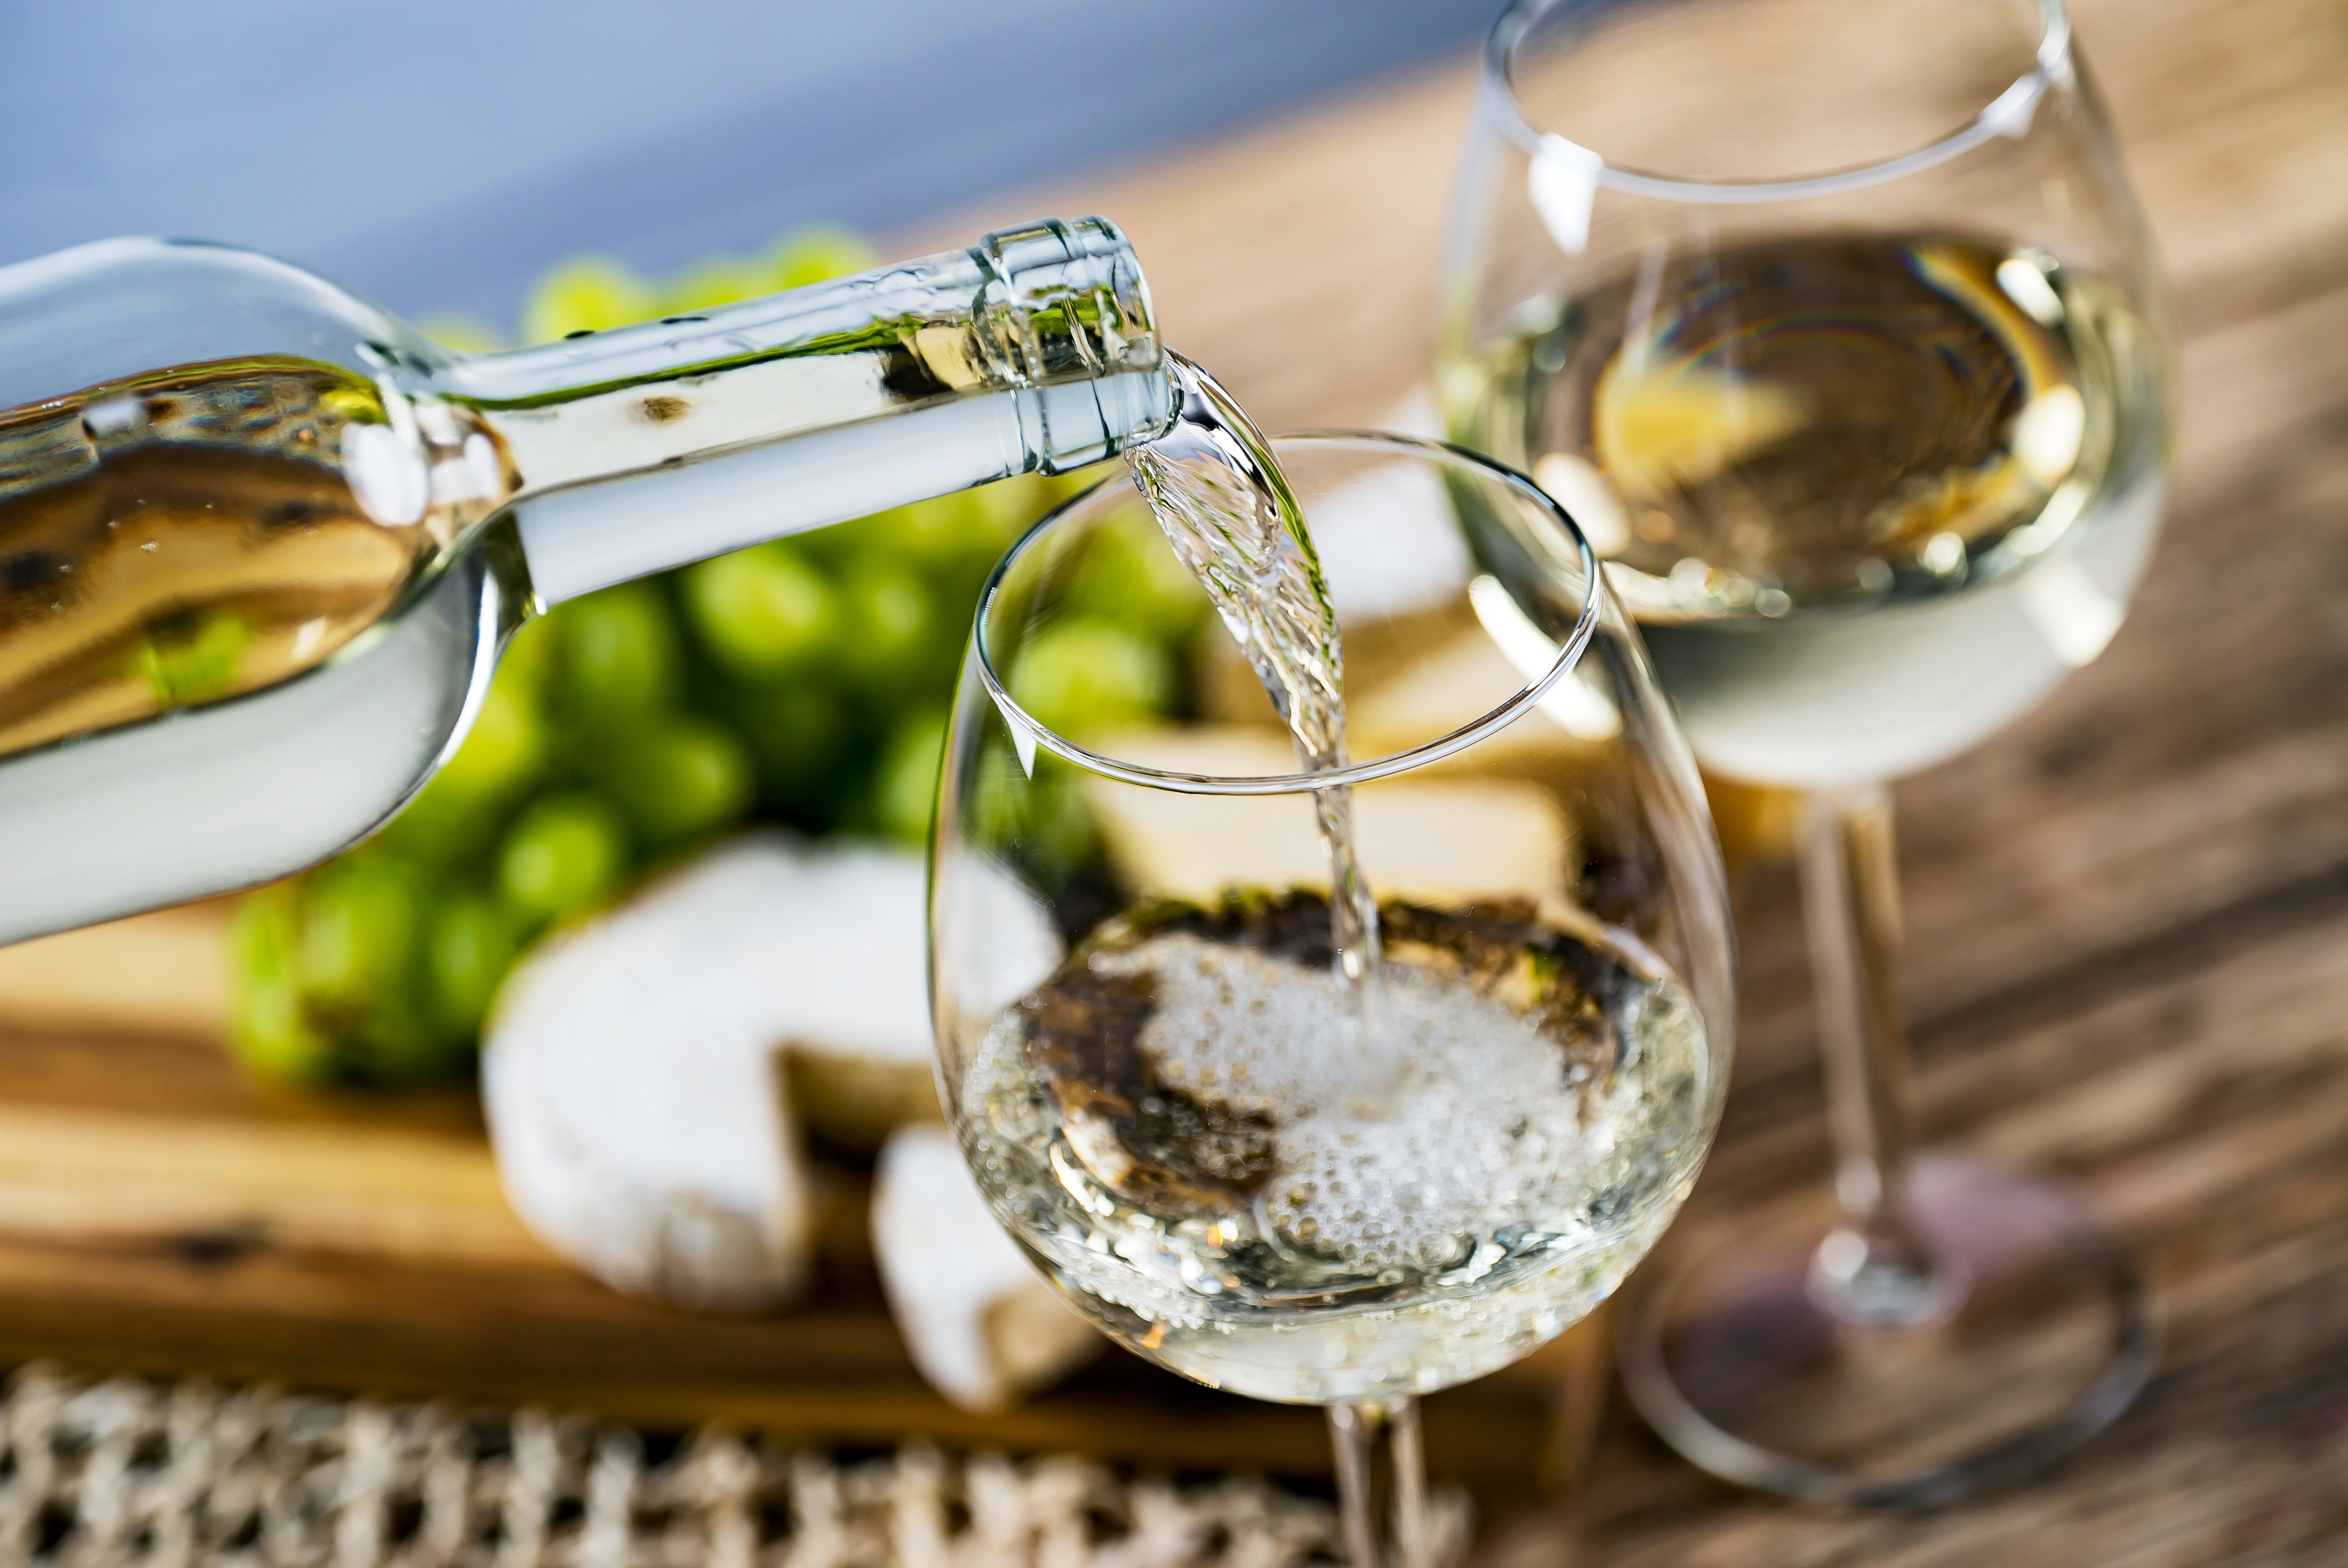 Confira também cinco rótulos produzidos com essa casta típica do Vale do Loire, na França, que está entre as favoritas para vinhos brancos